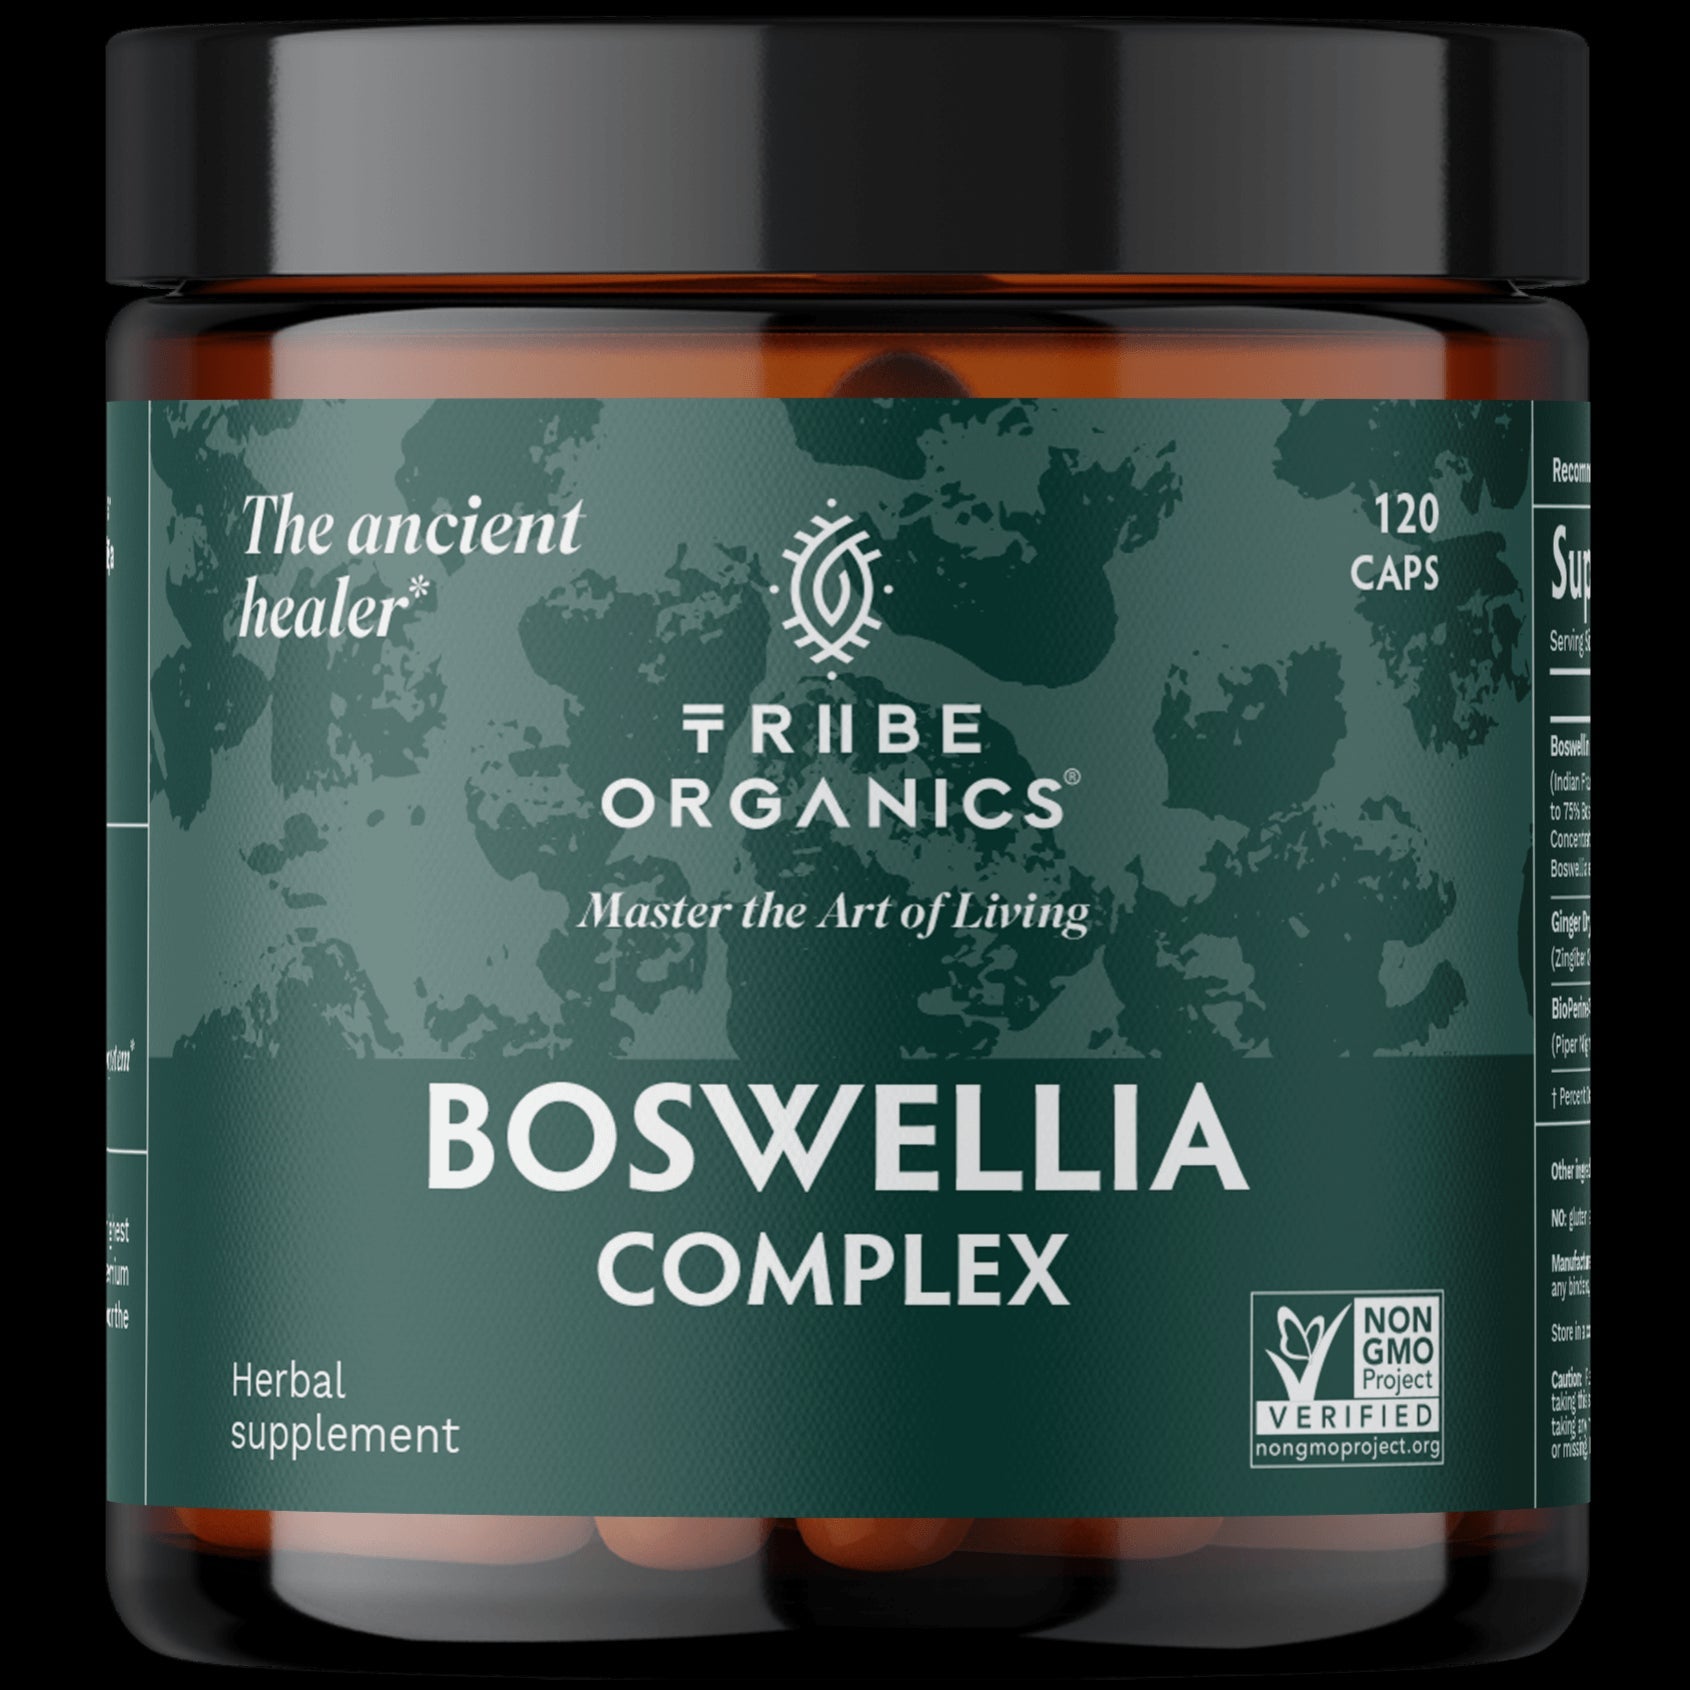 Boswellia Complex